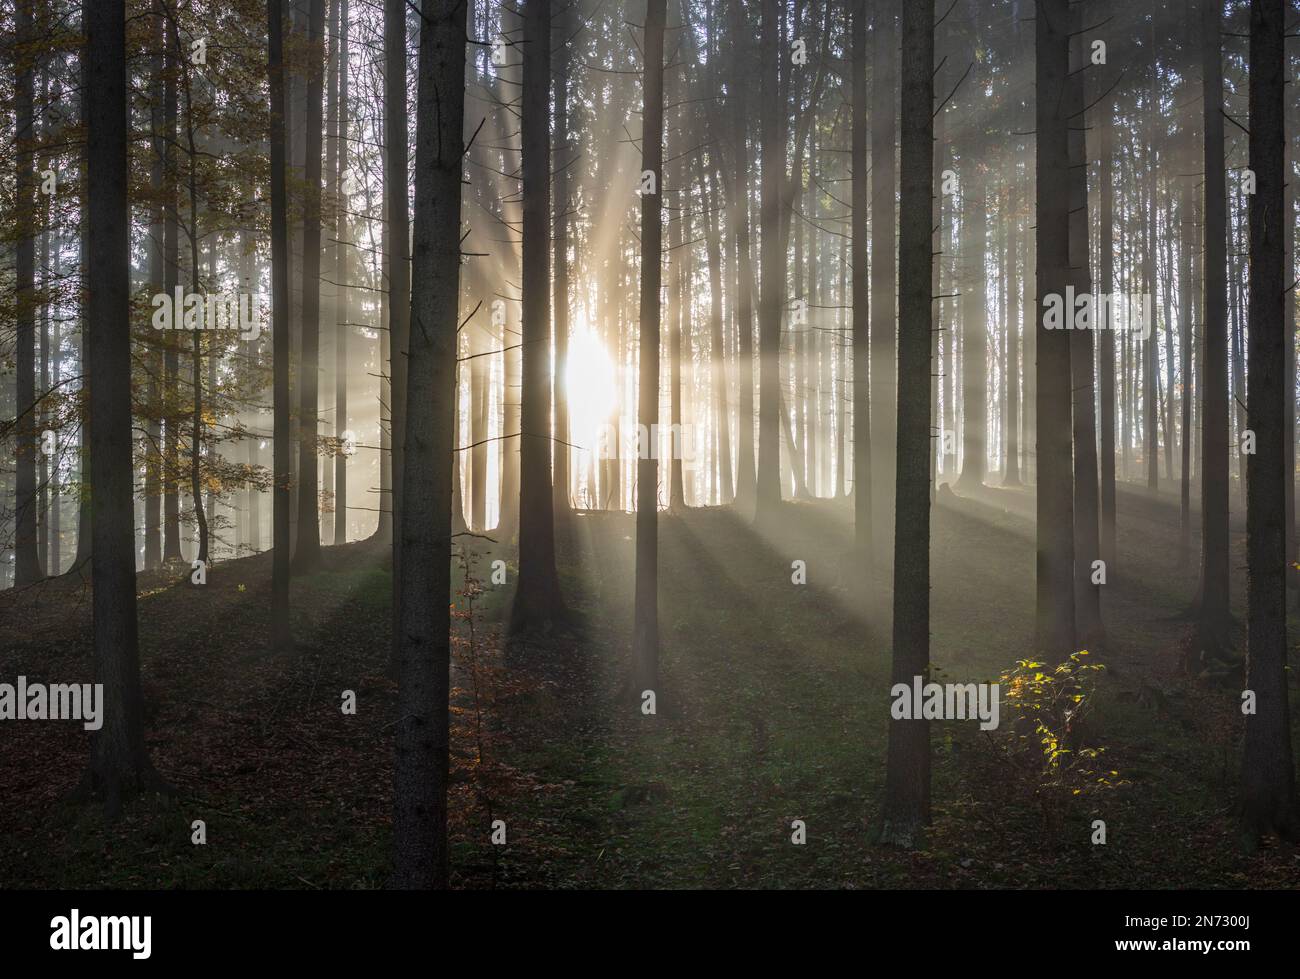 Sulovske skaly (Sulov Rocks), forêt, arbres, rayons du soleil à travers la brume matinale en Slovaquie Banque D'Images